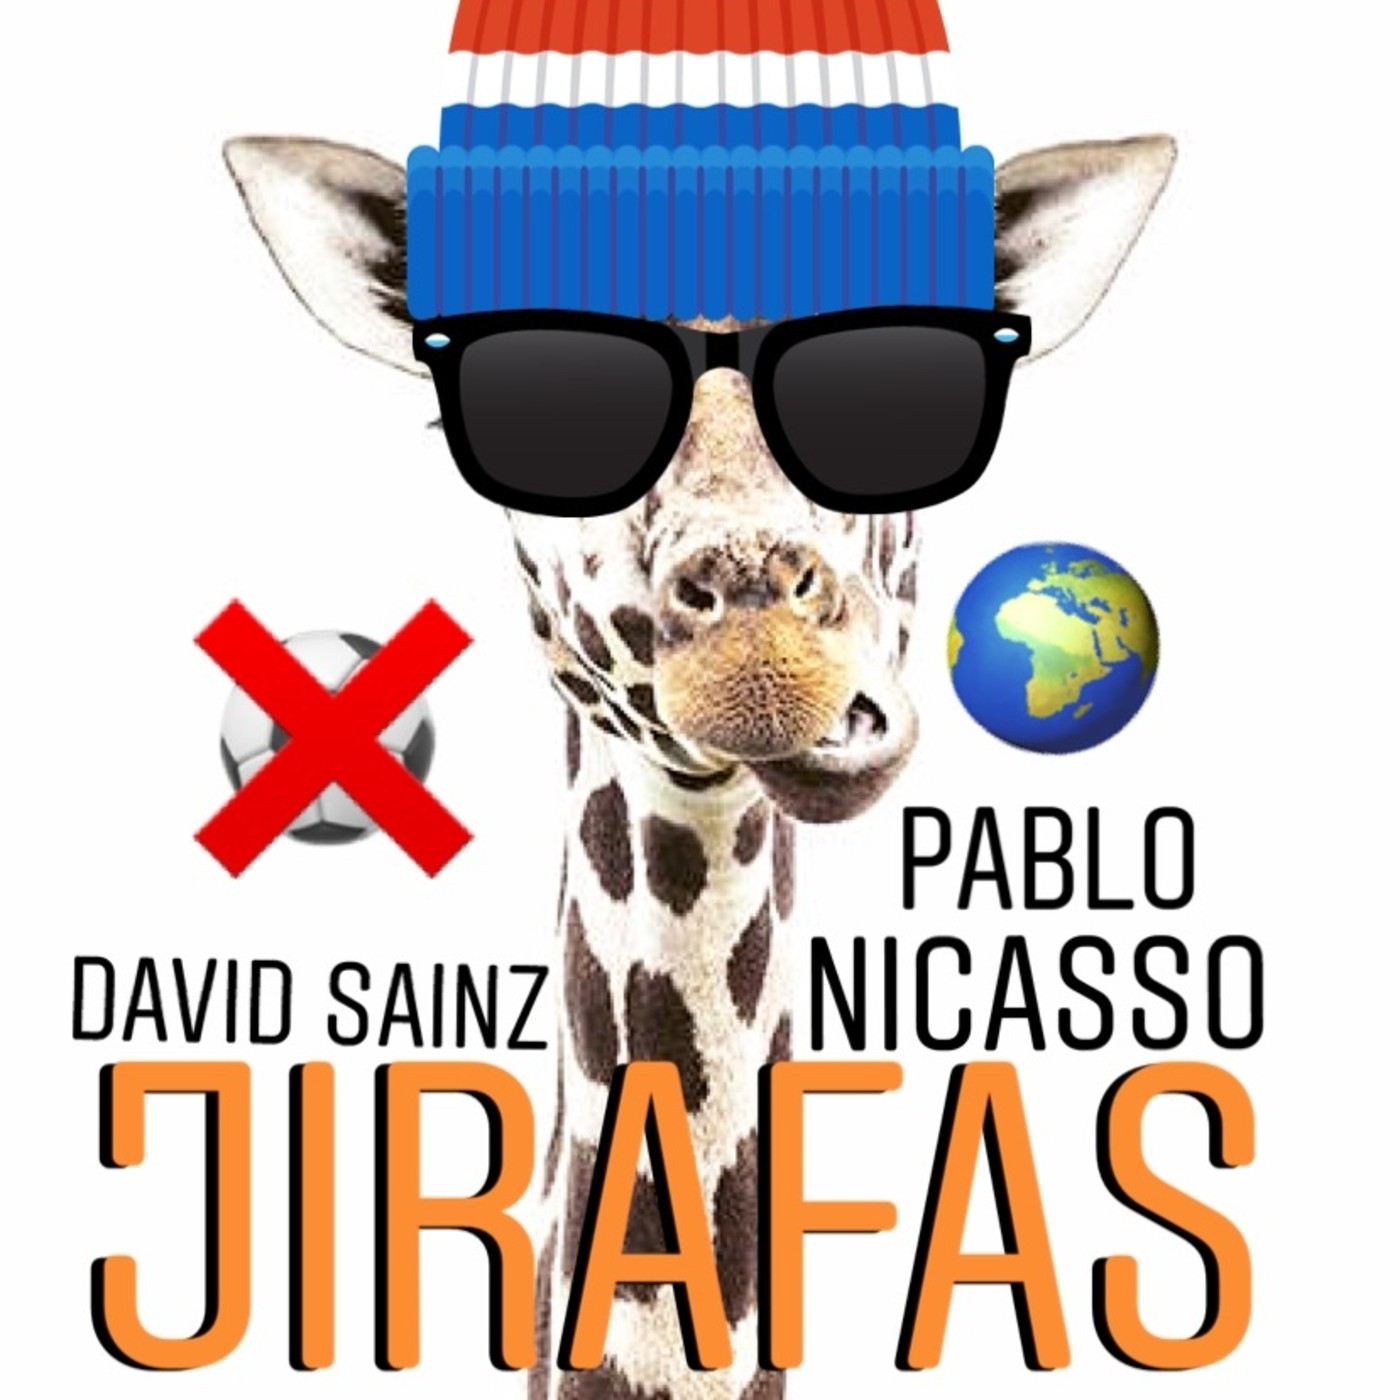 Jirafas con Pablo Nicasso: Milenials, Bad Bunny y Tierra plana.